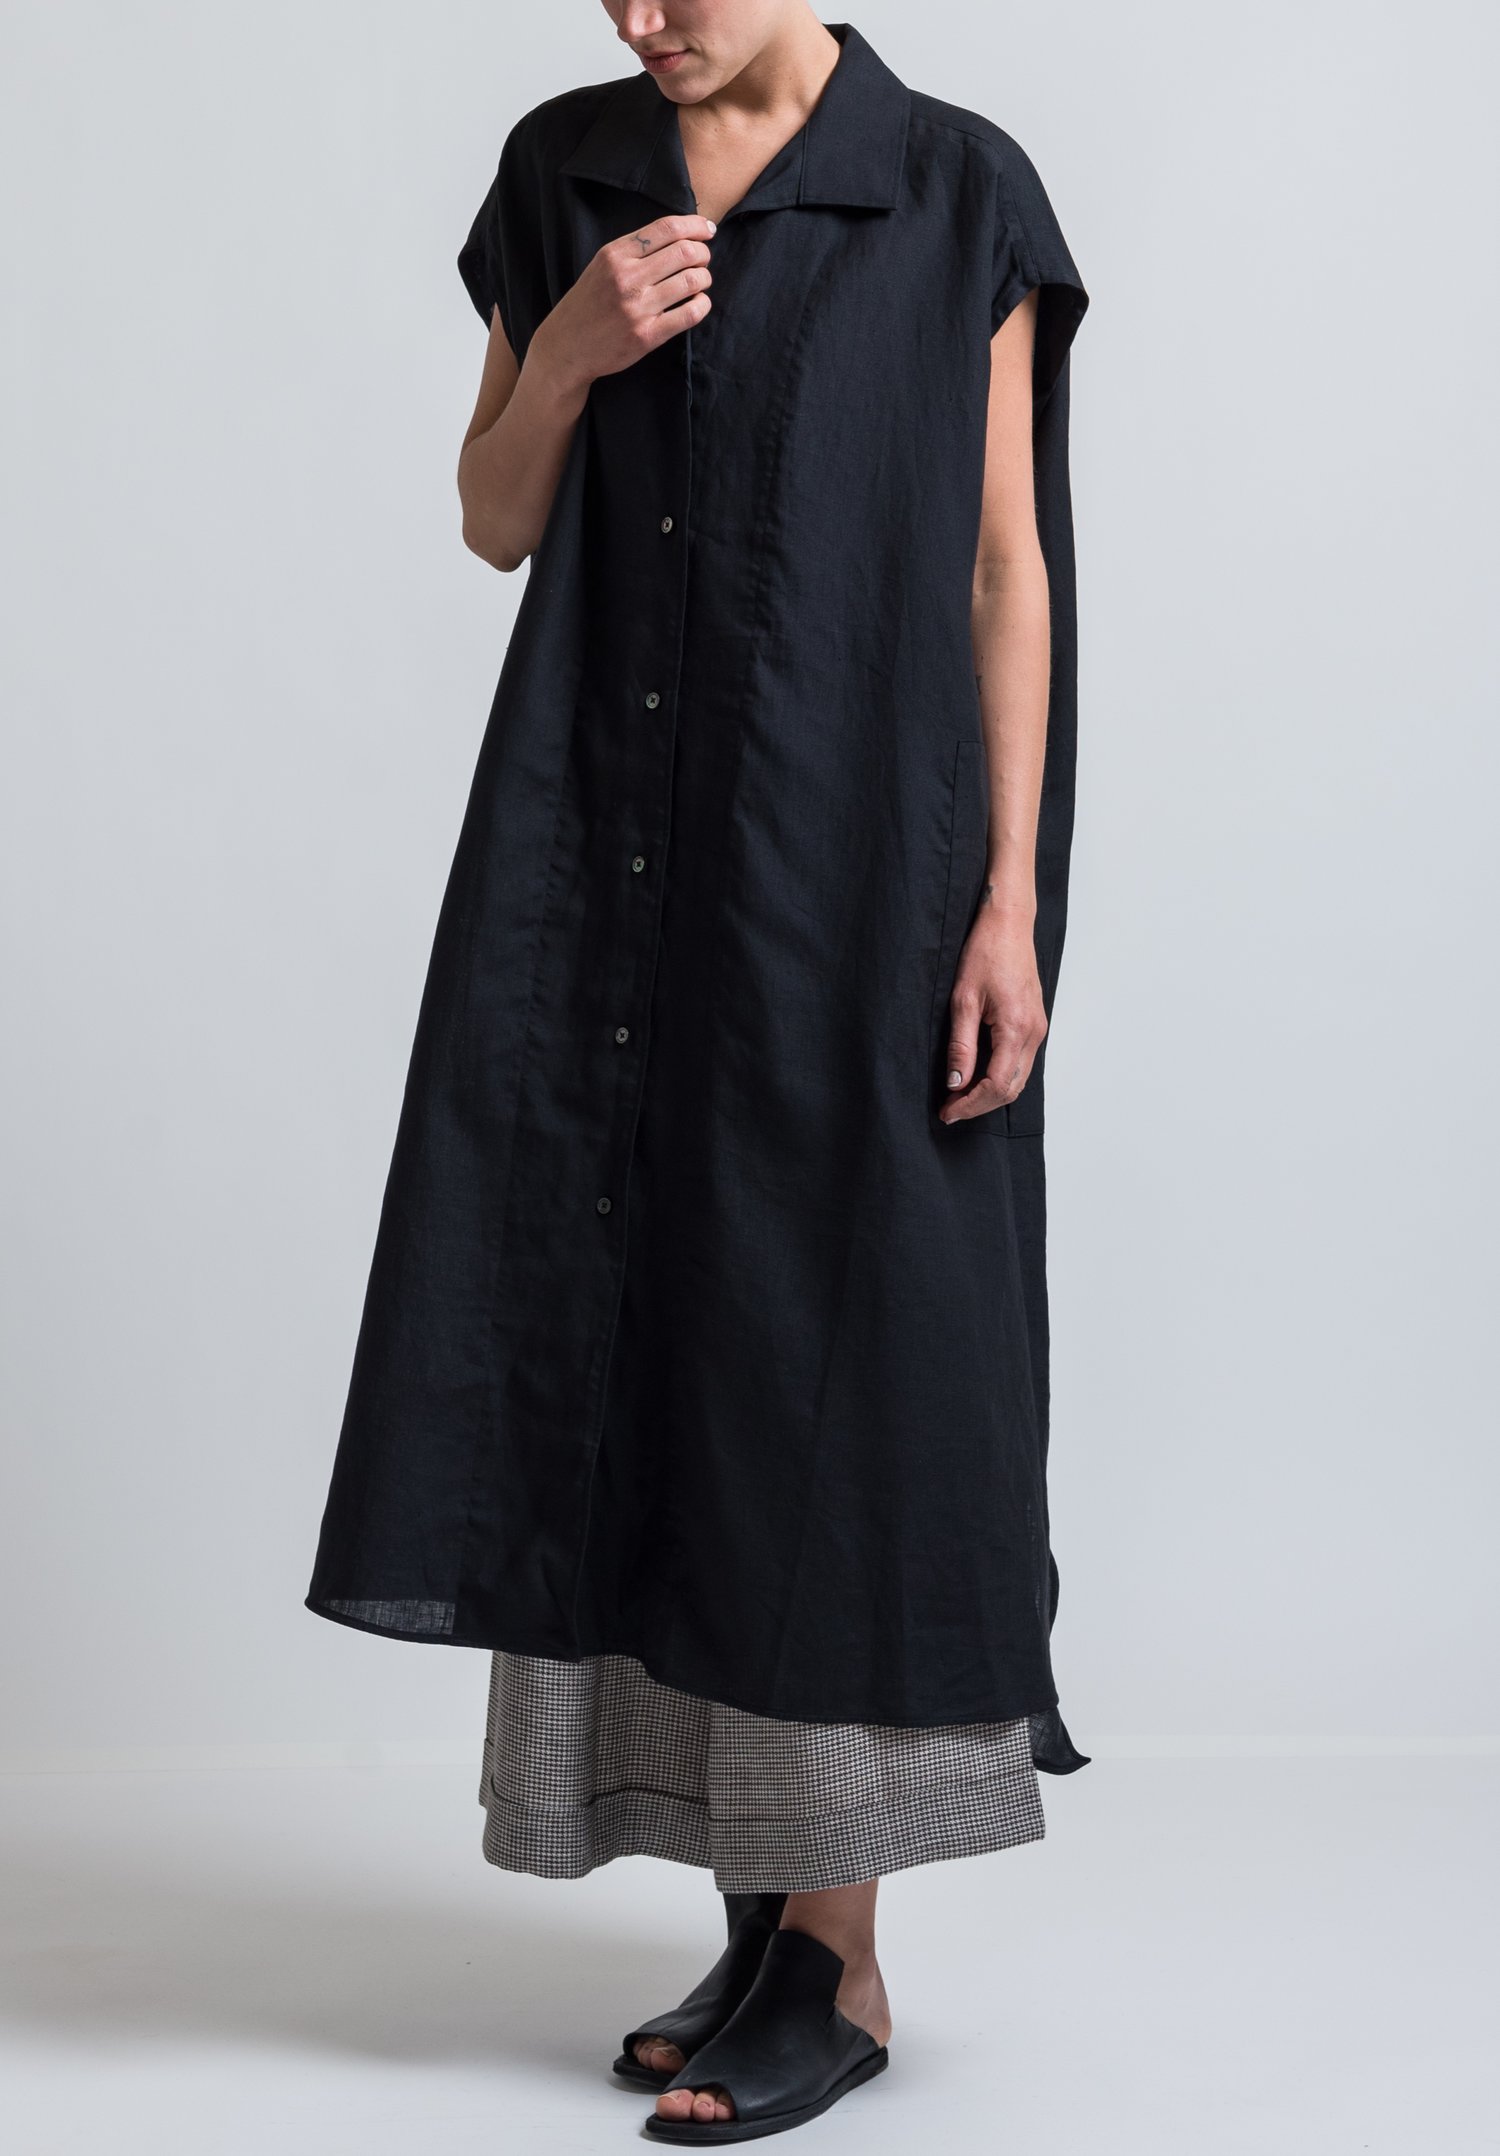 Ticca Linen Sleeveless Shirt Dress in Black | Santa Fe Dry Goods ...